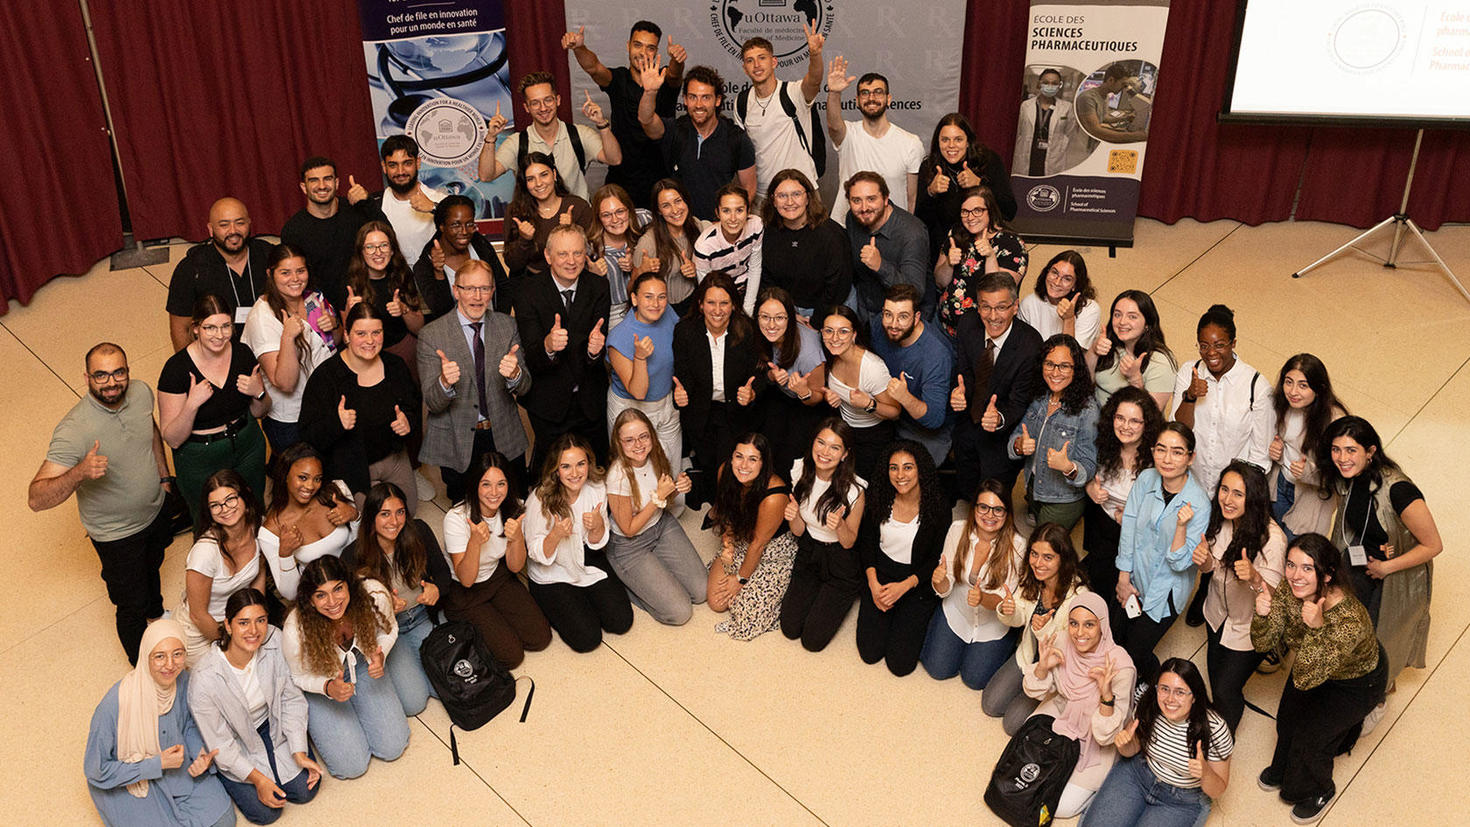 Les étudiantes et étudiants de la première cohorte du programme de pharmacie en français de l’École des sciences pharmaceutiques de l’Université d’Ottawa (Faculté de médecine).